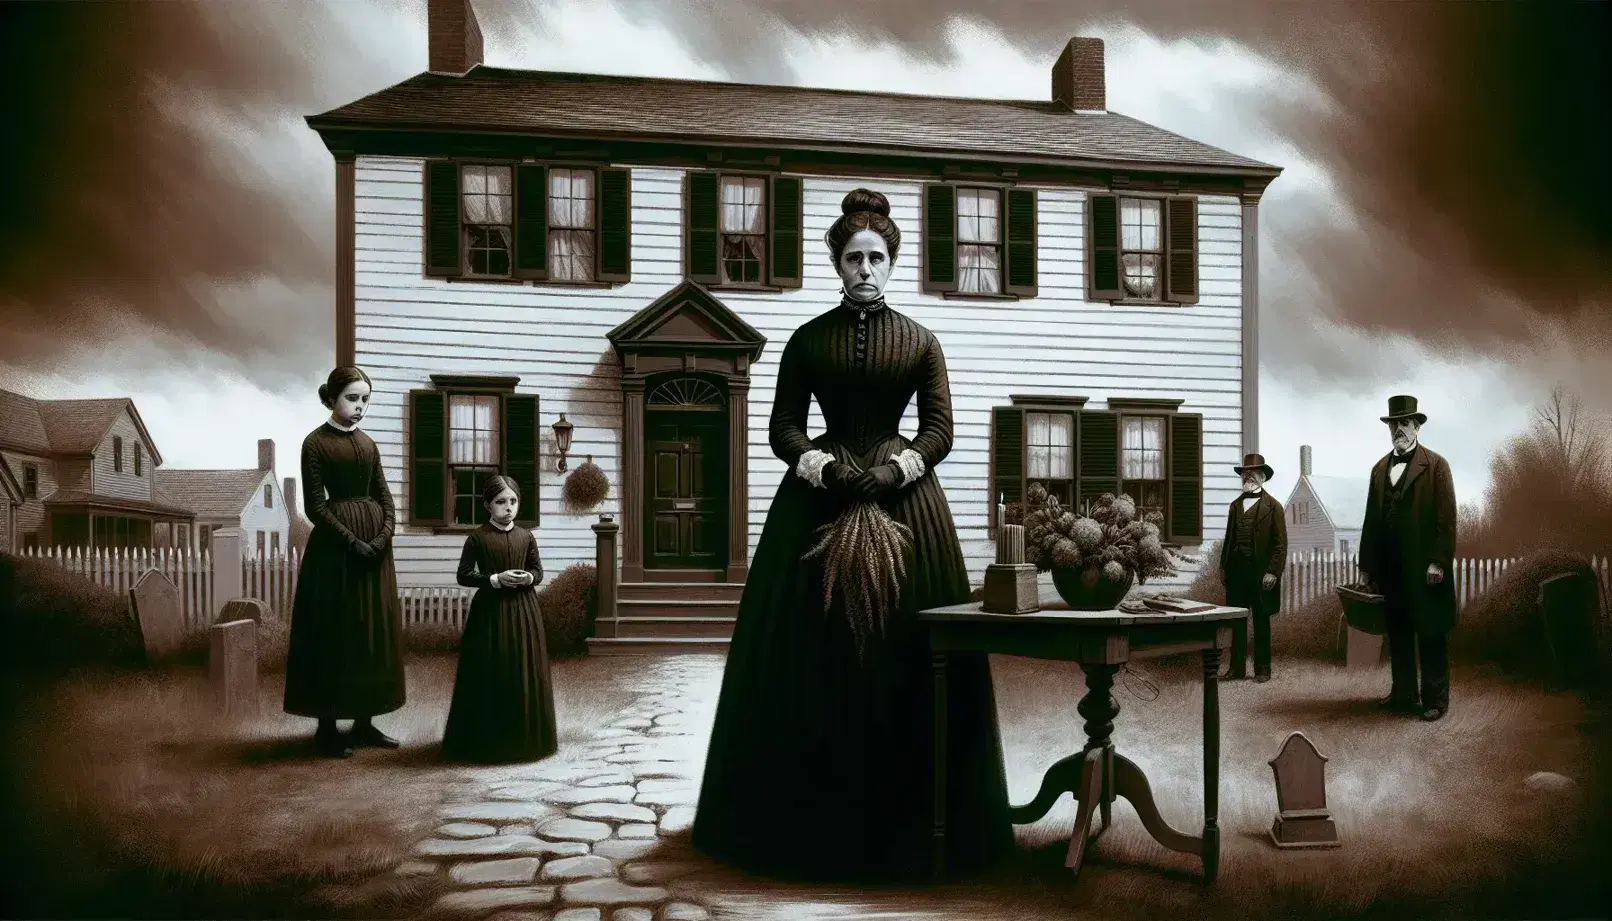 Mujer de mediana edad en luto con pañuelo negro y dos niñas serias frente a casa colonial desgastada, hombre mayor observa a distancia, cielo nublado.